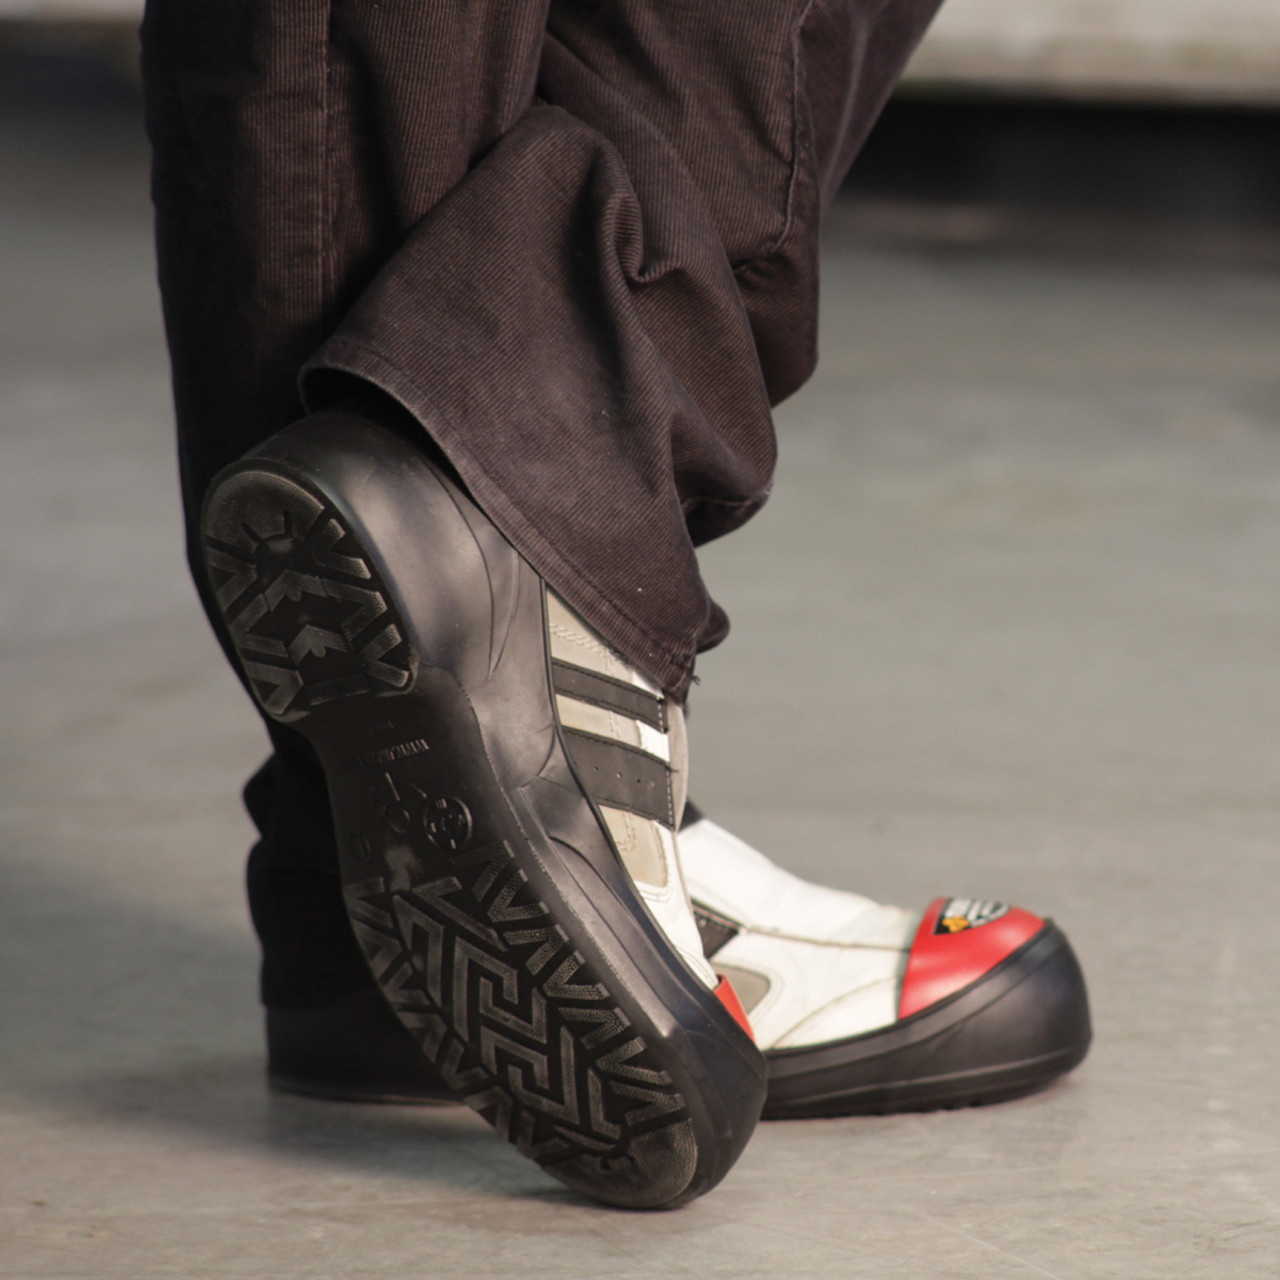 turbotoe slip on safety shoe